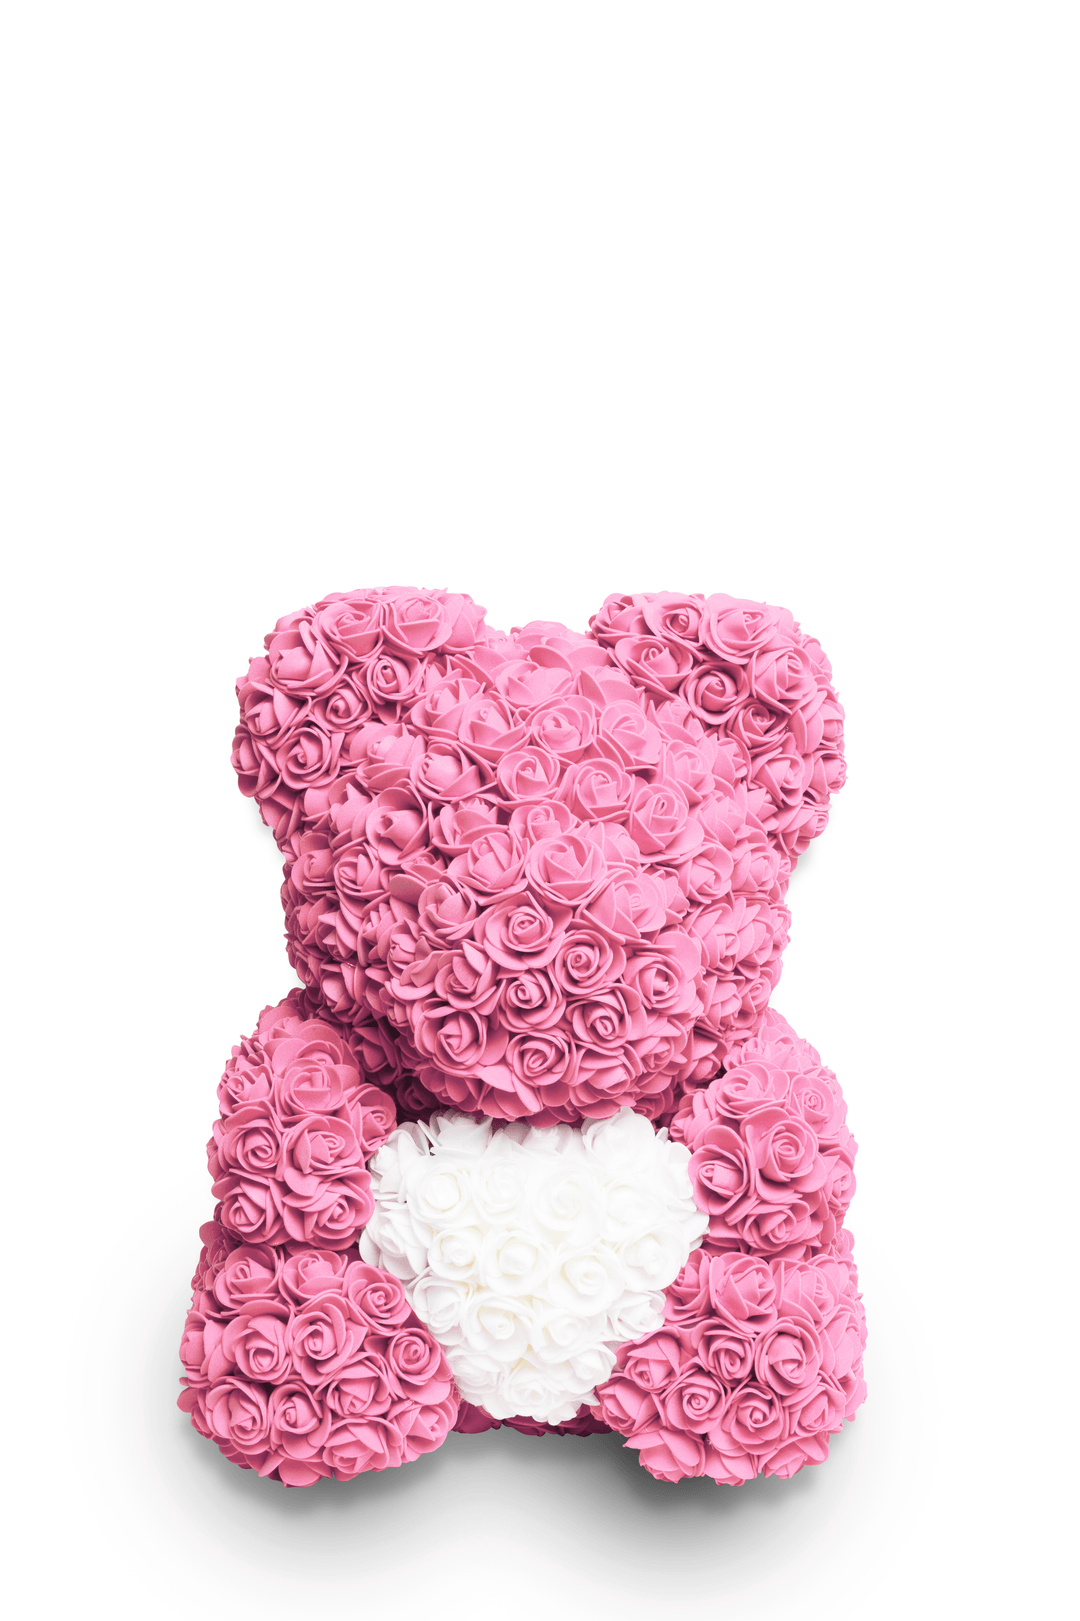 الدب الوردي - وردي مع قلب أبيض